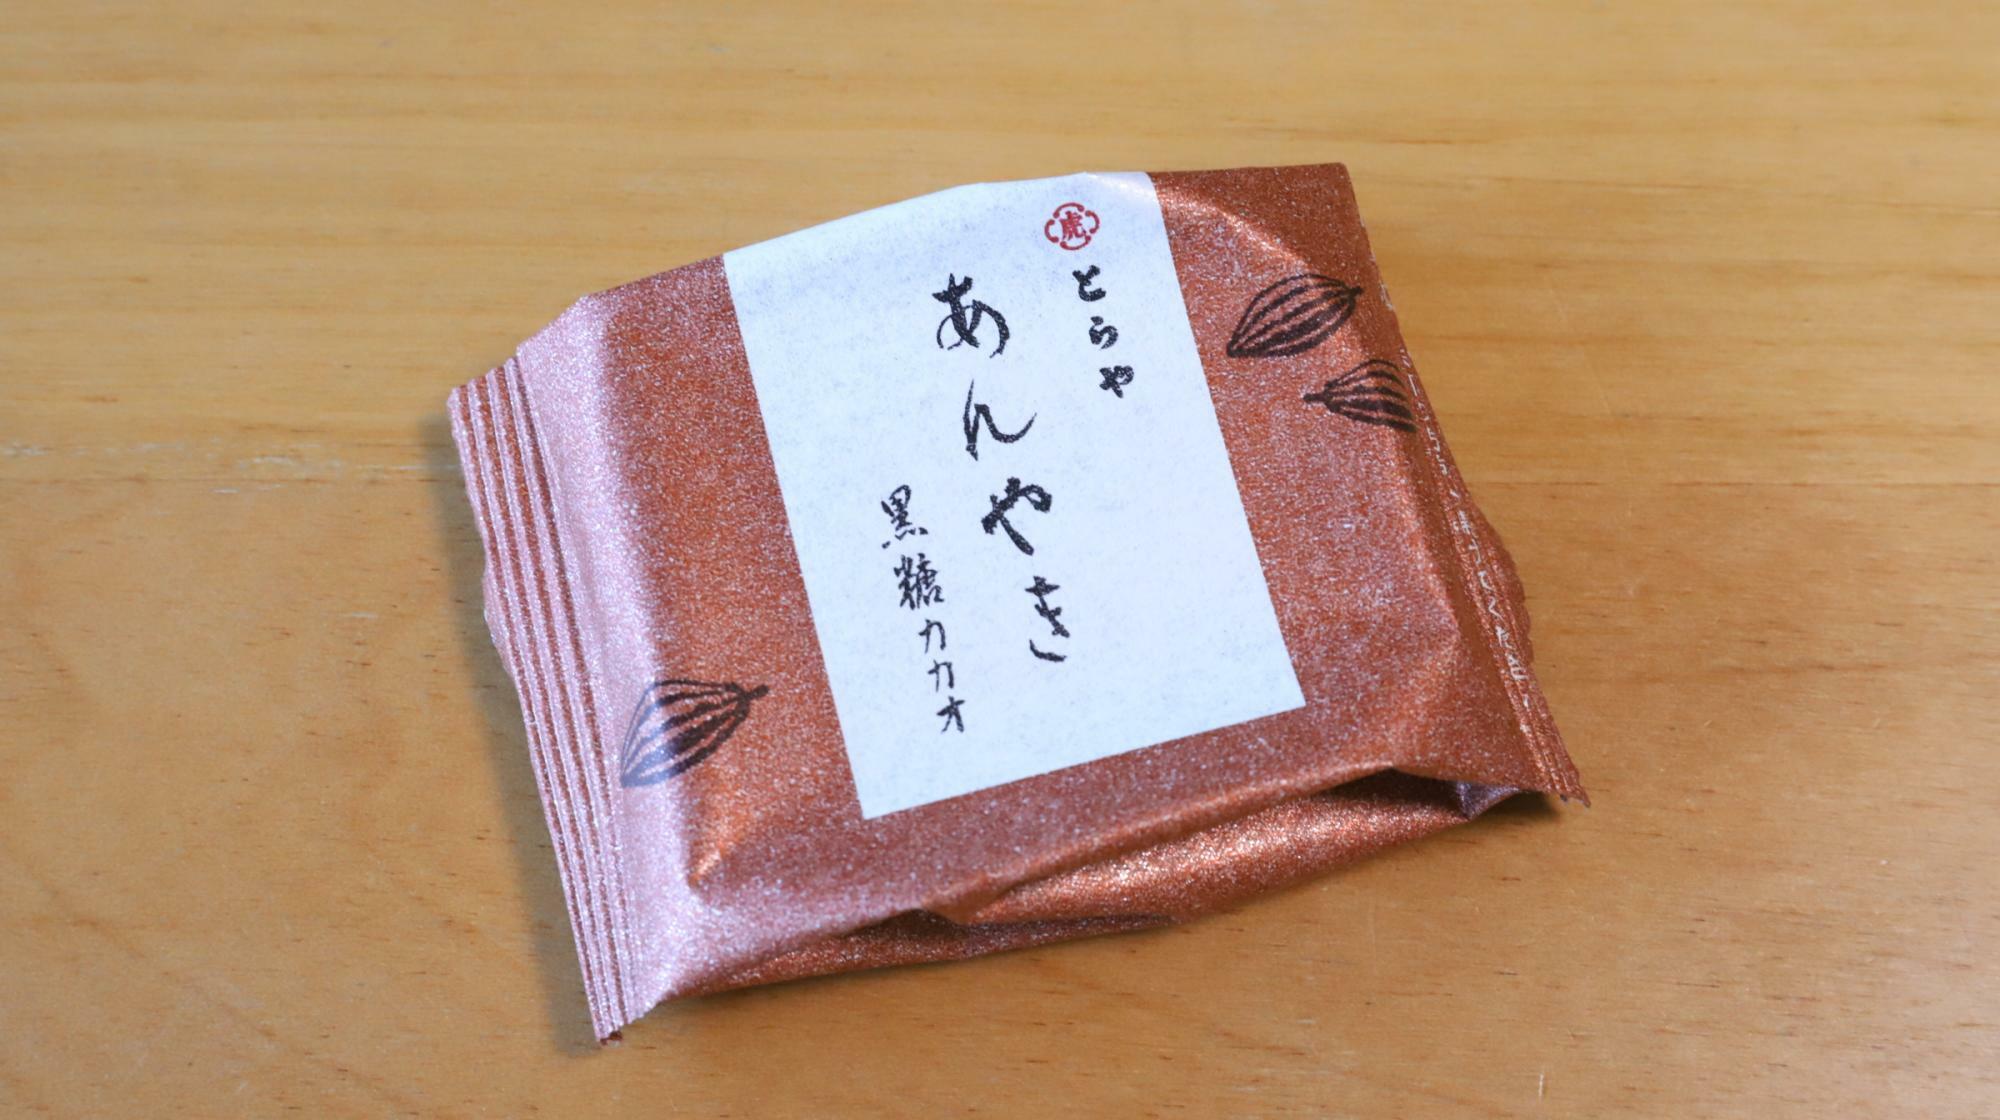 とらやの人気ひとくち和菓子、あんやきから季節限定で発売された黒糖カカオ